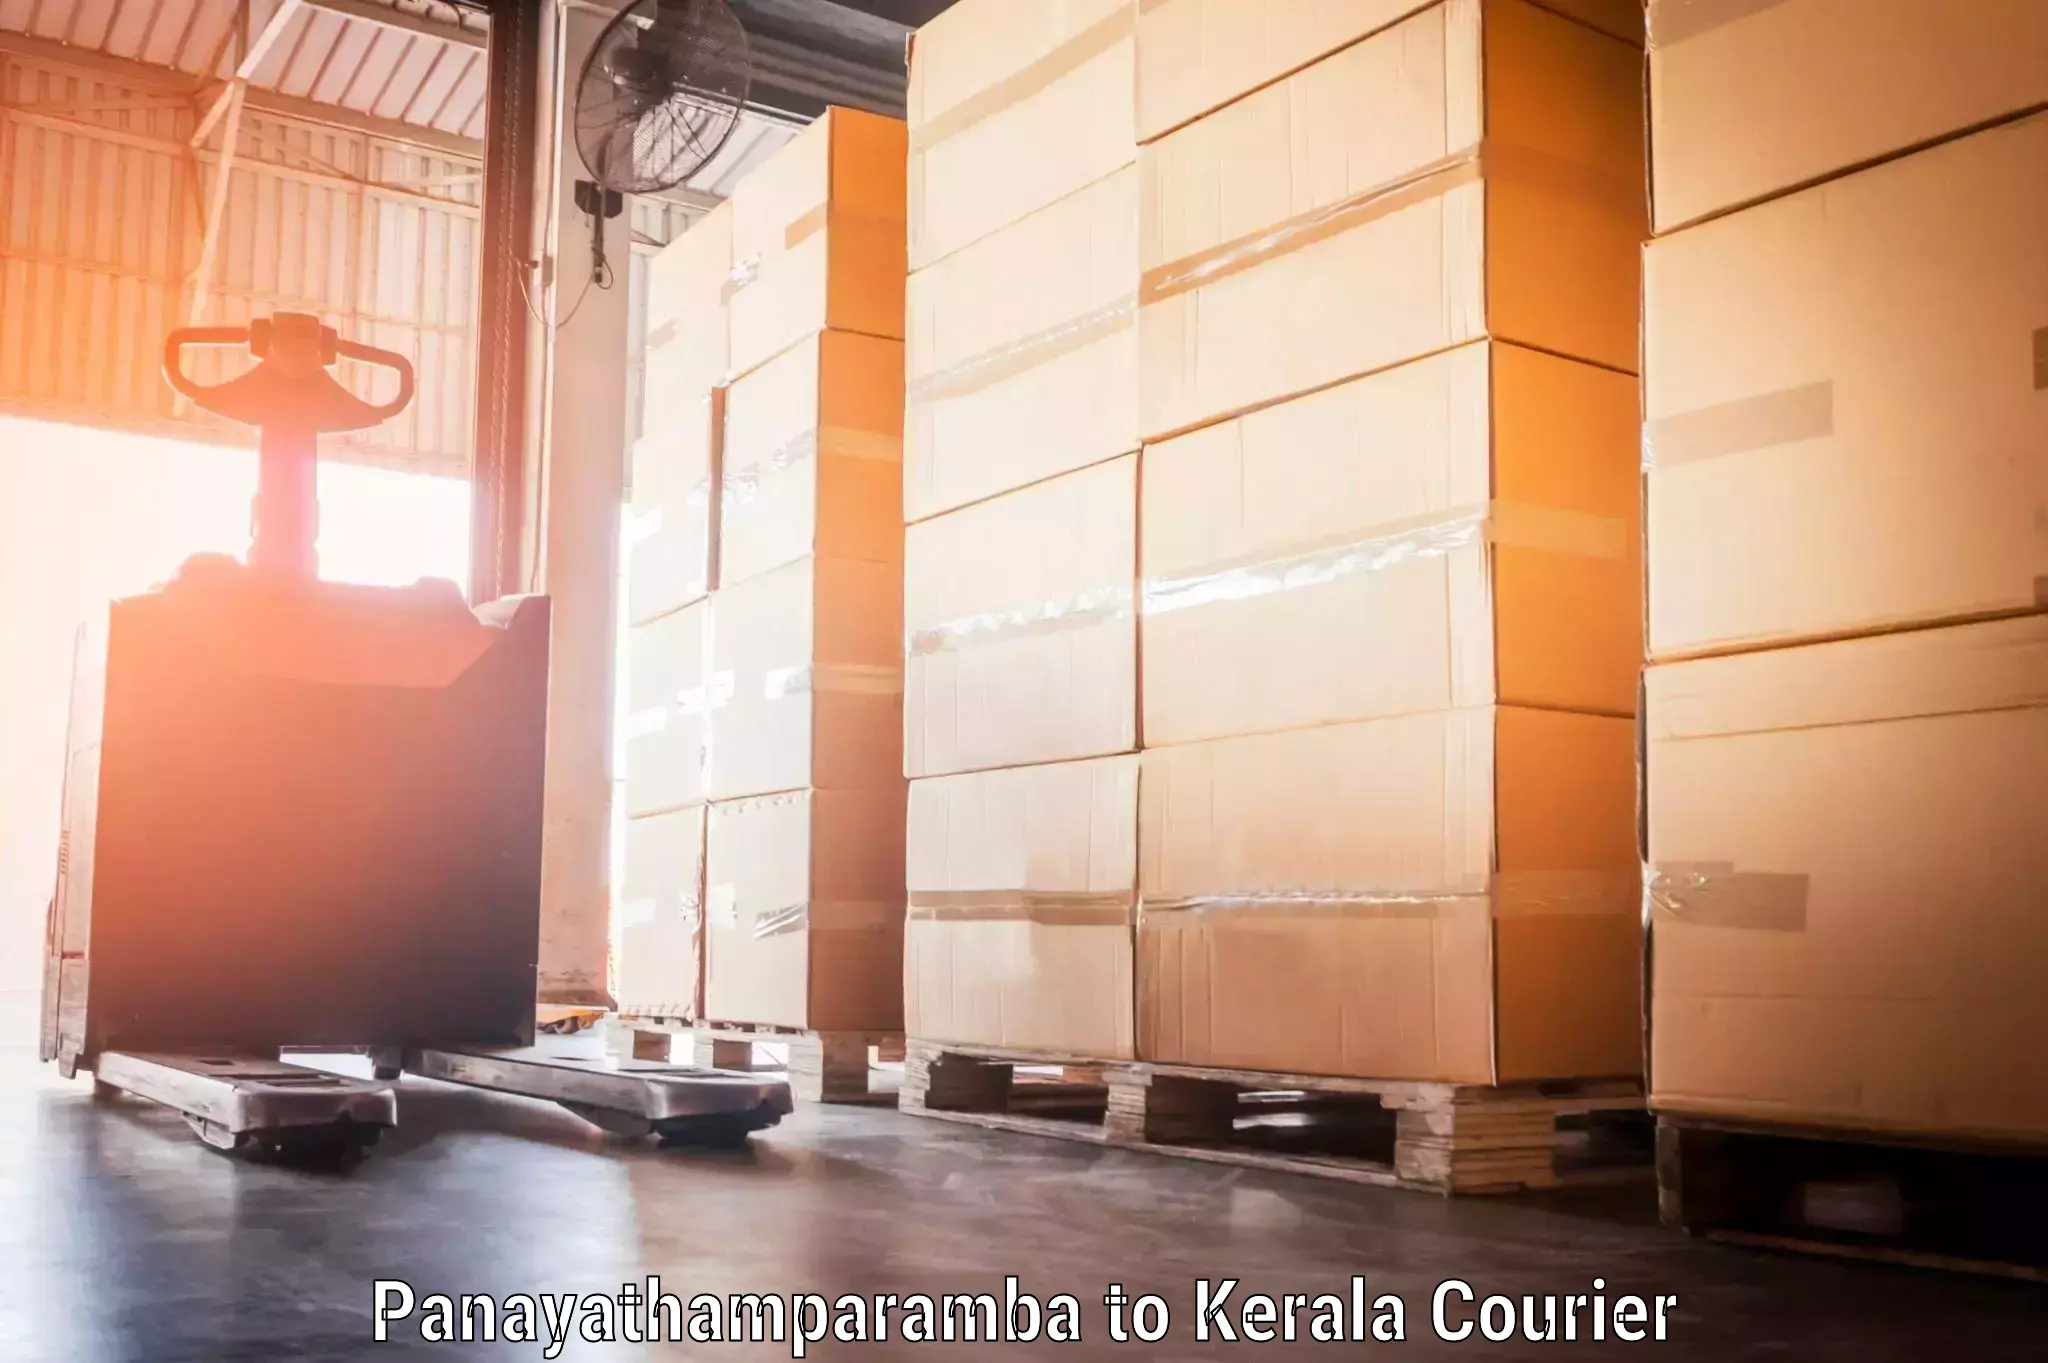 Luggage transport company Panayathamparamba to Kerala